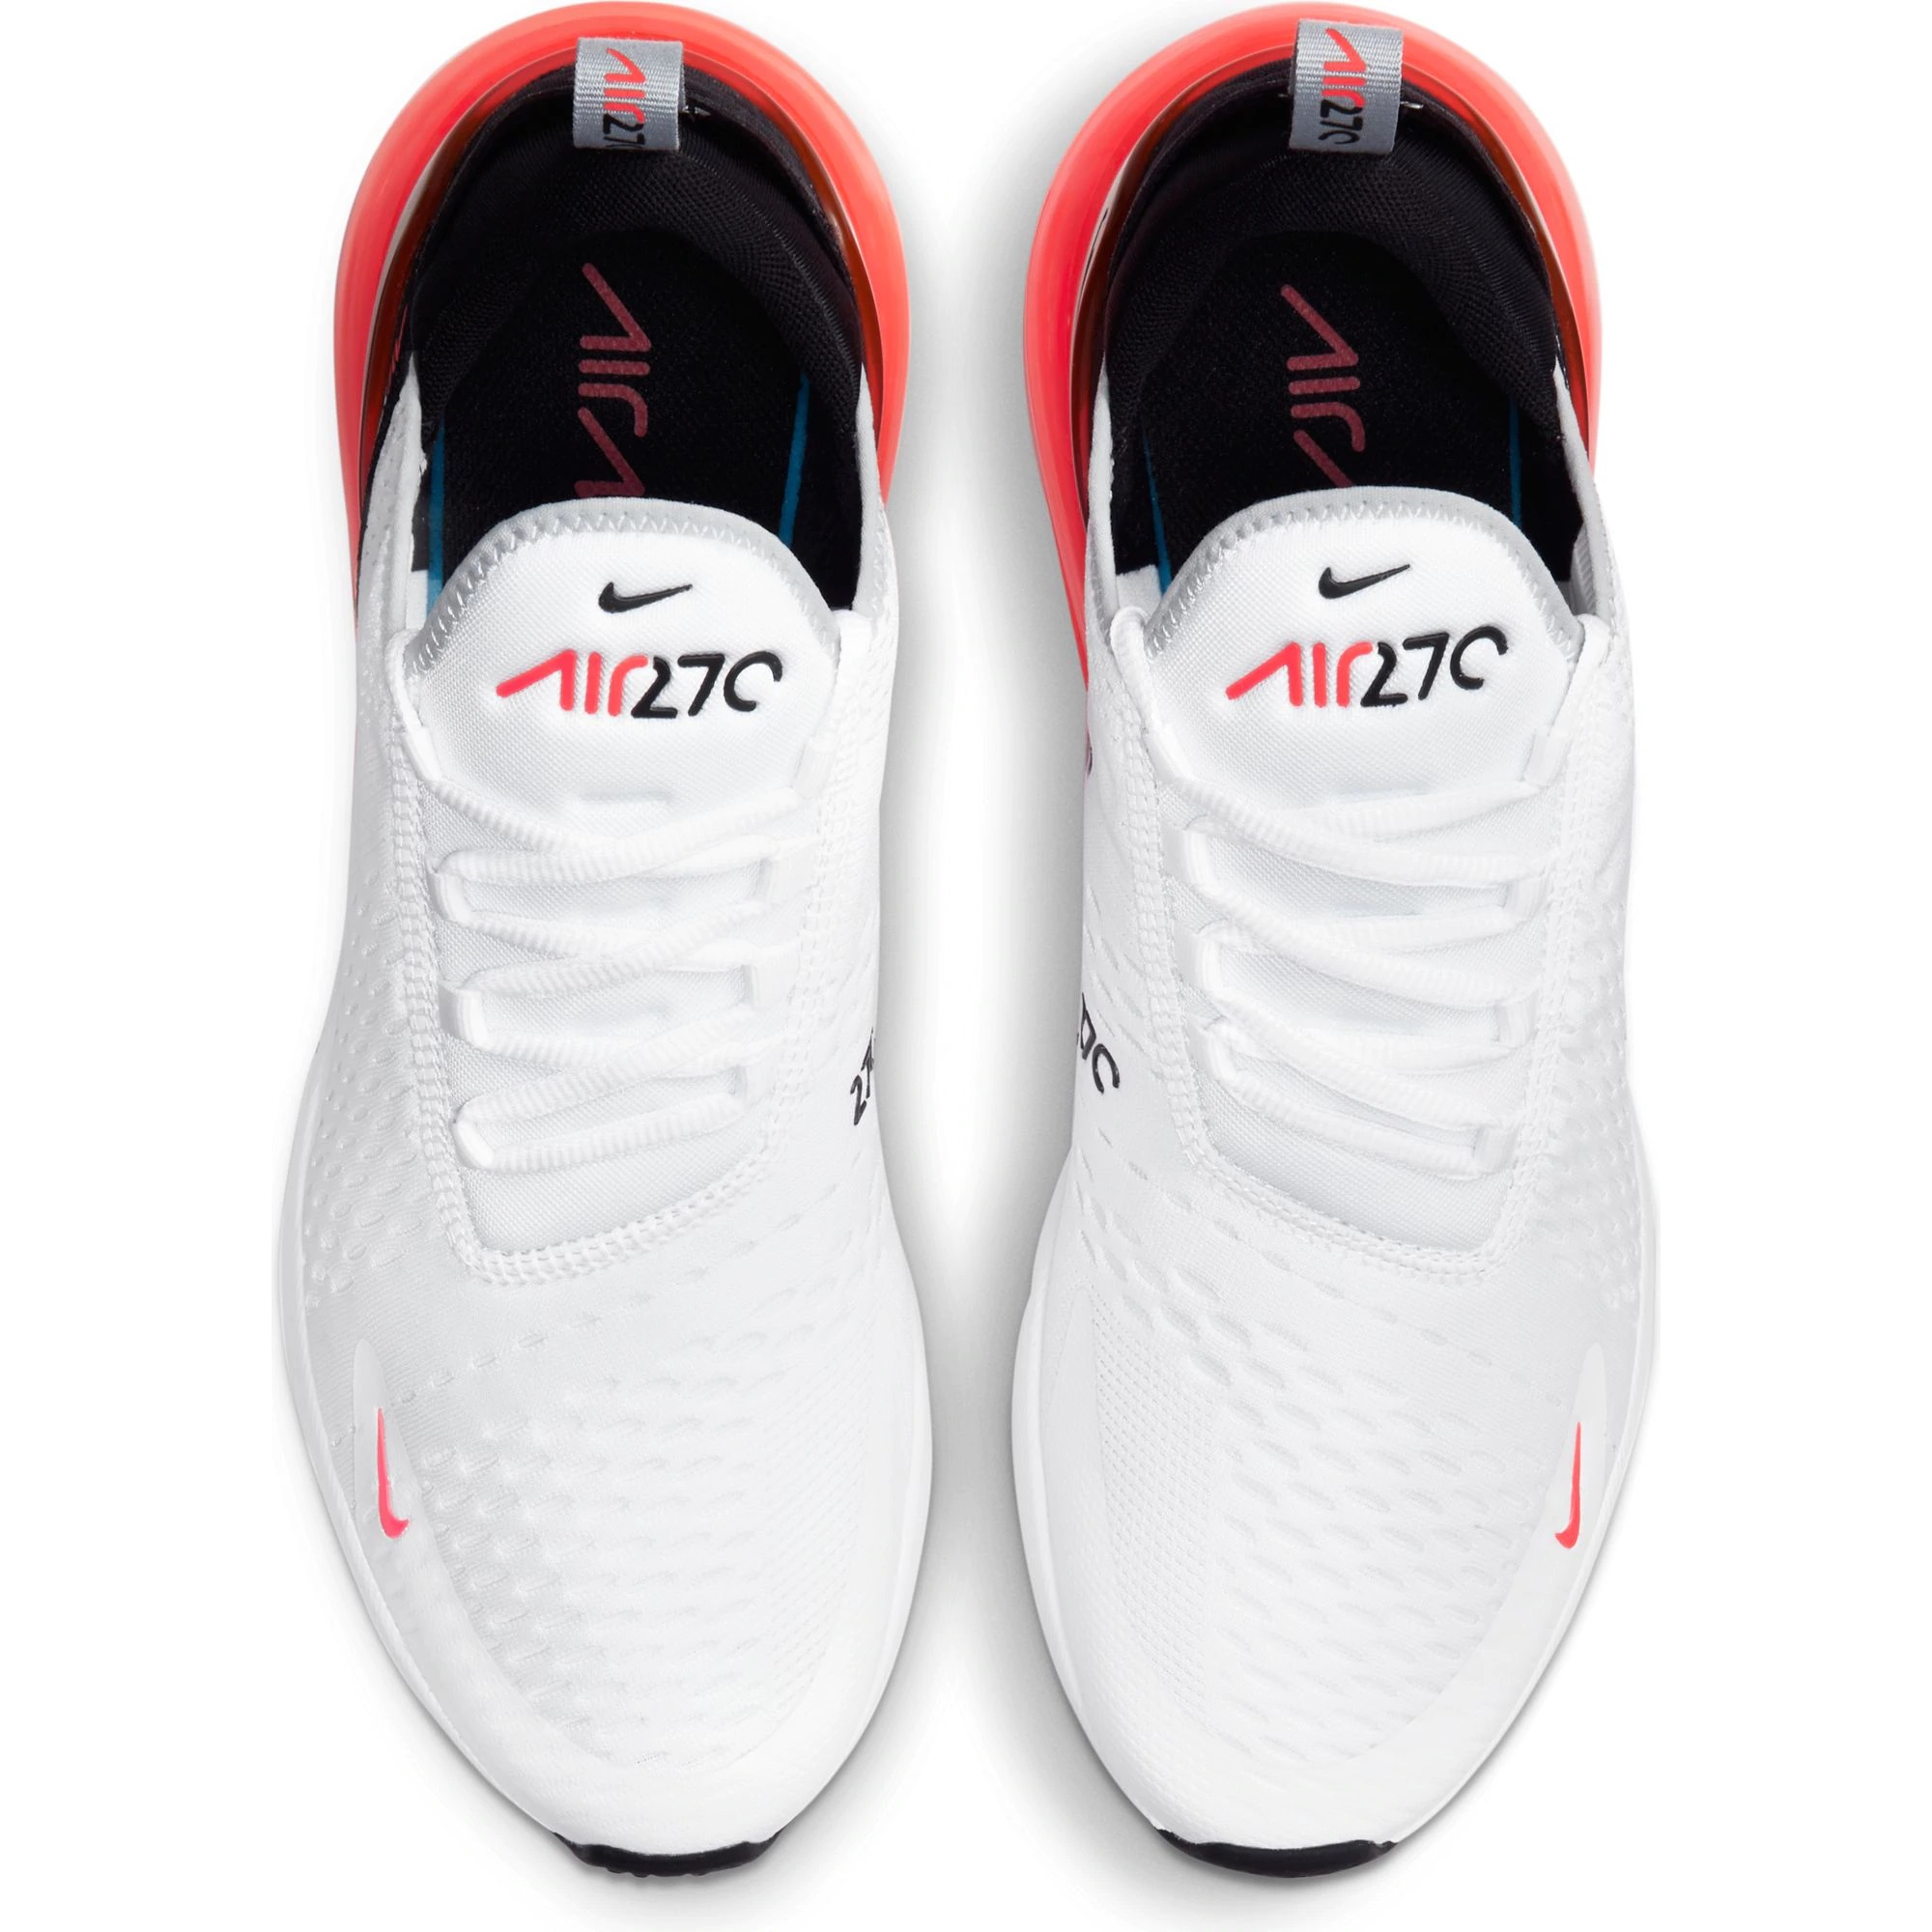 Nike Men's Air men air max 270 Max 270 Running Shoe